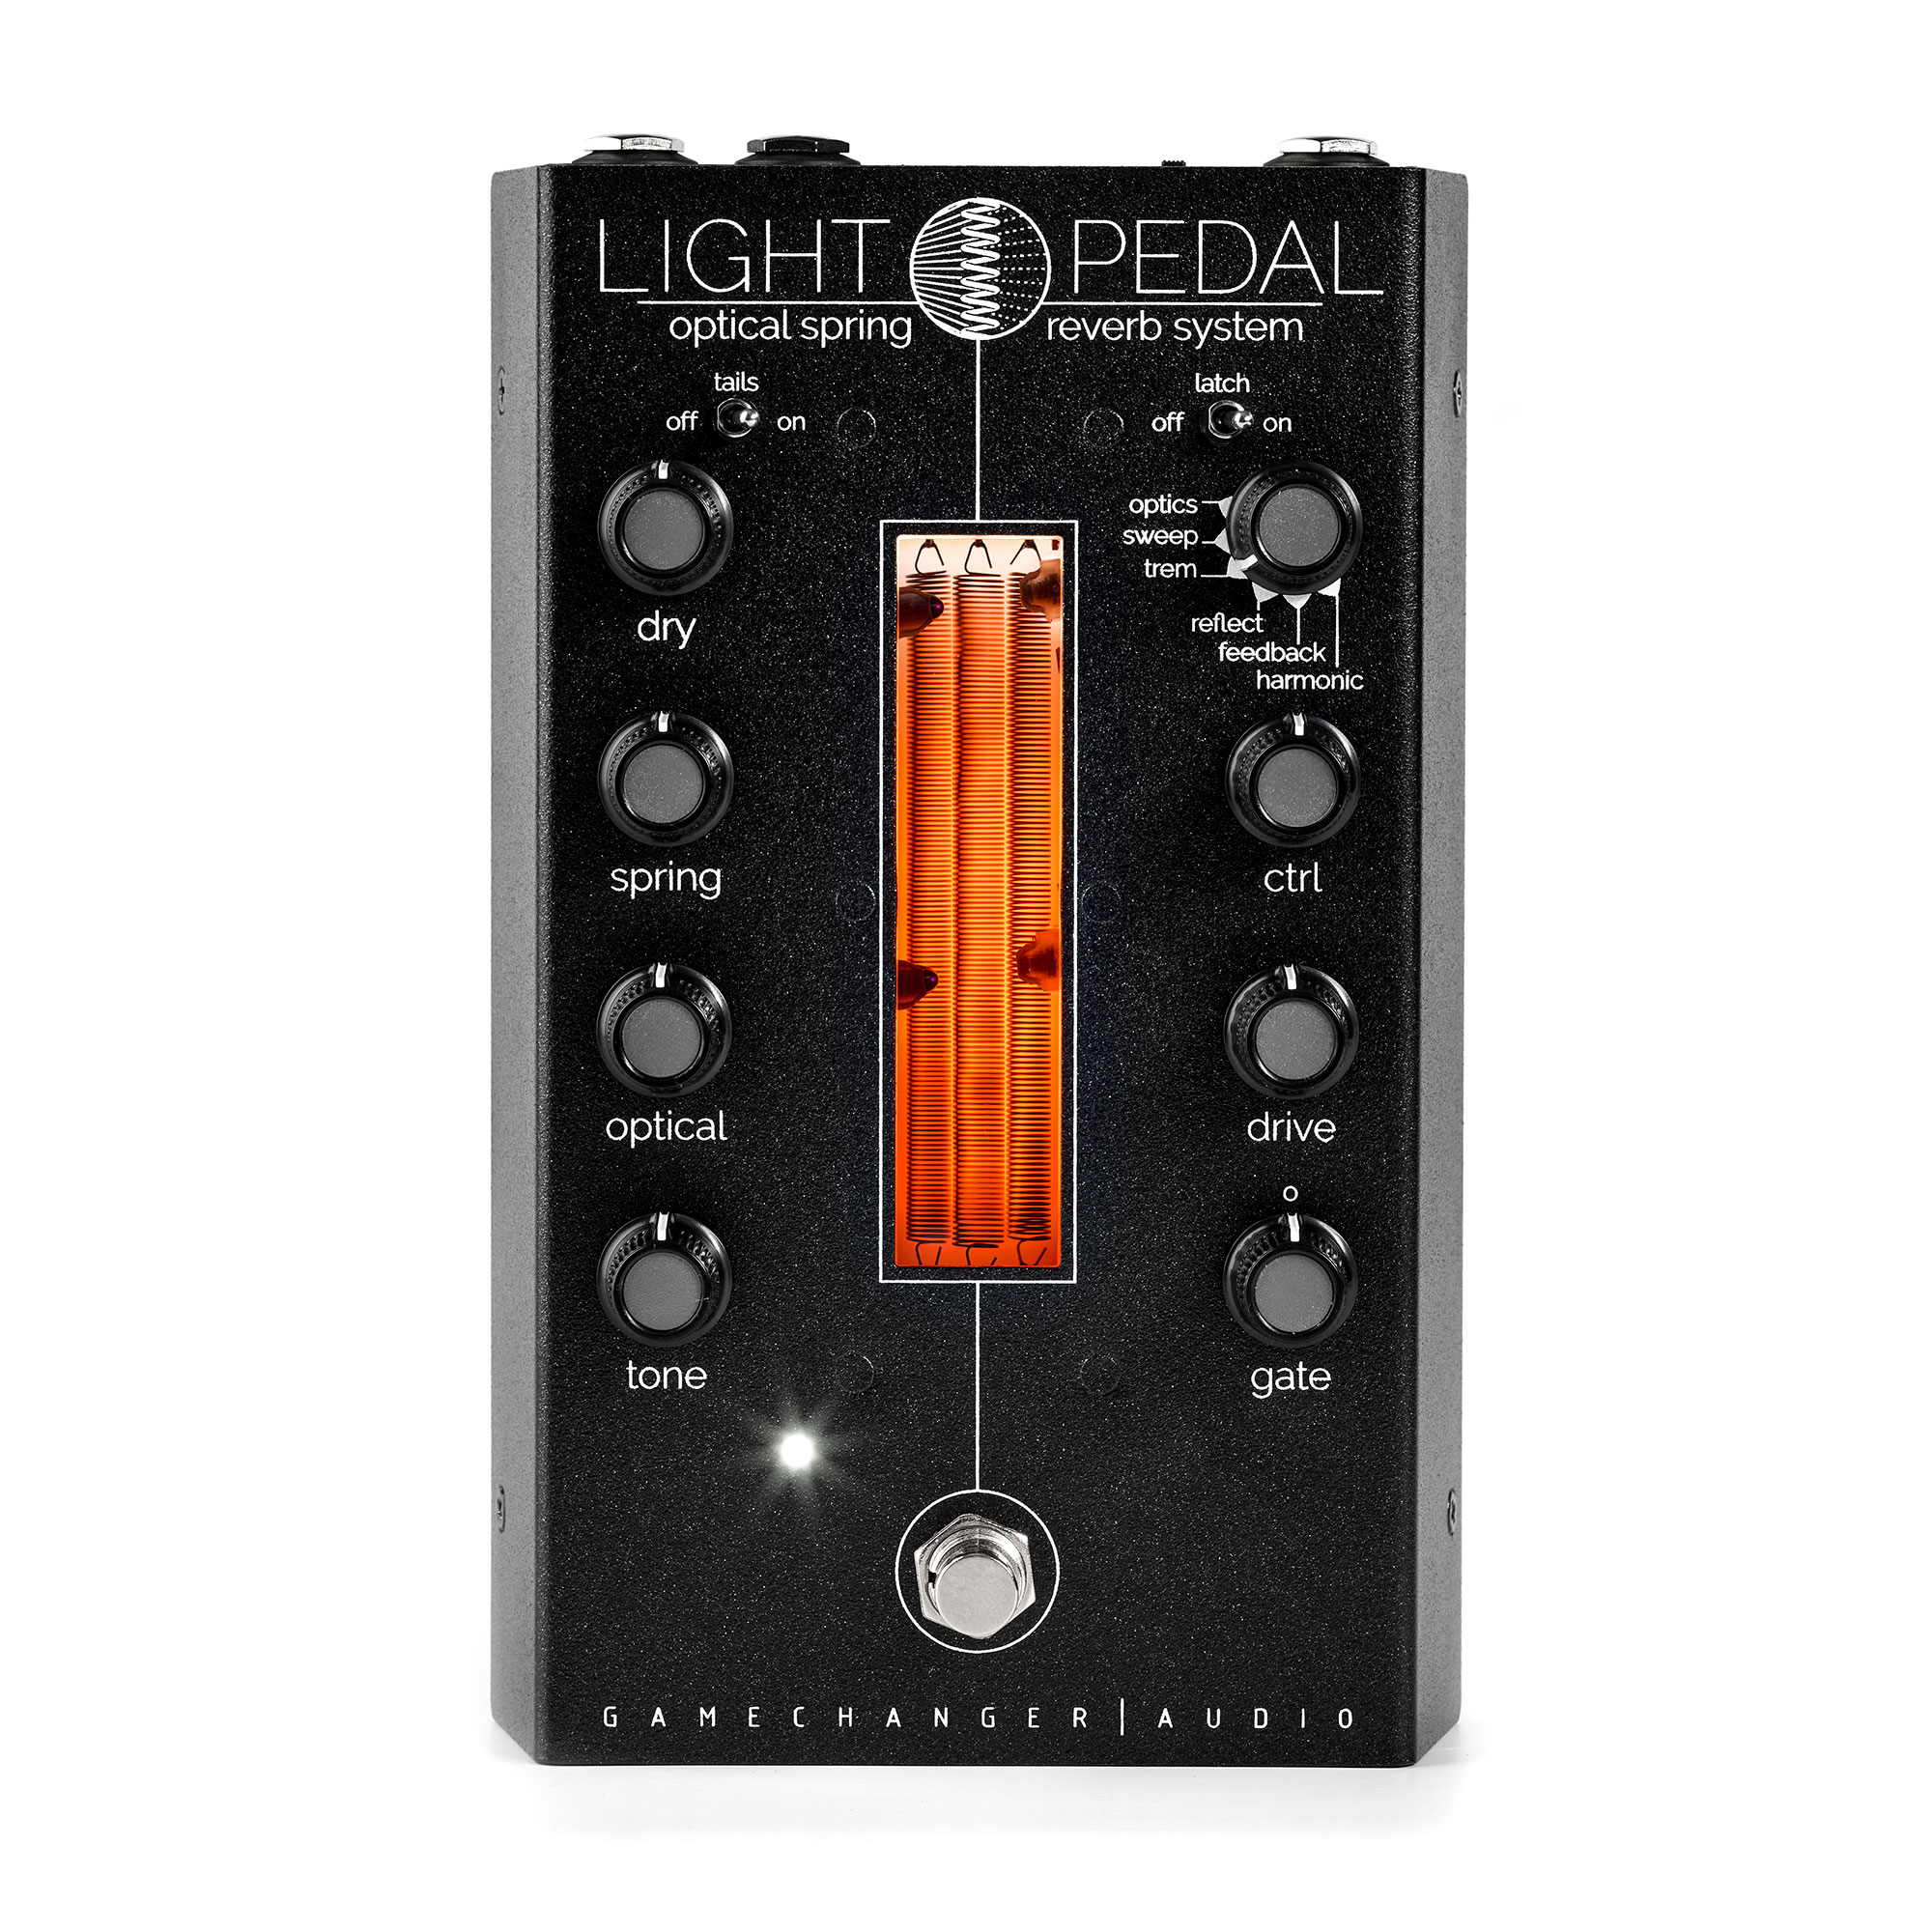 楽器・機材Gamechanger Audio  LIGHT PEDAL リバーブペダル